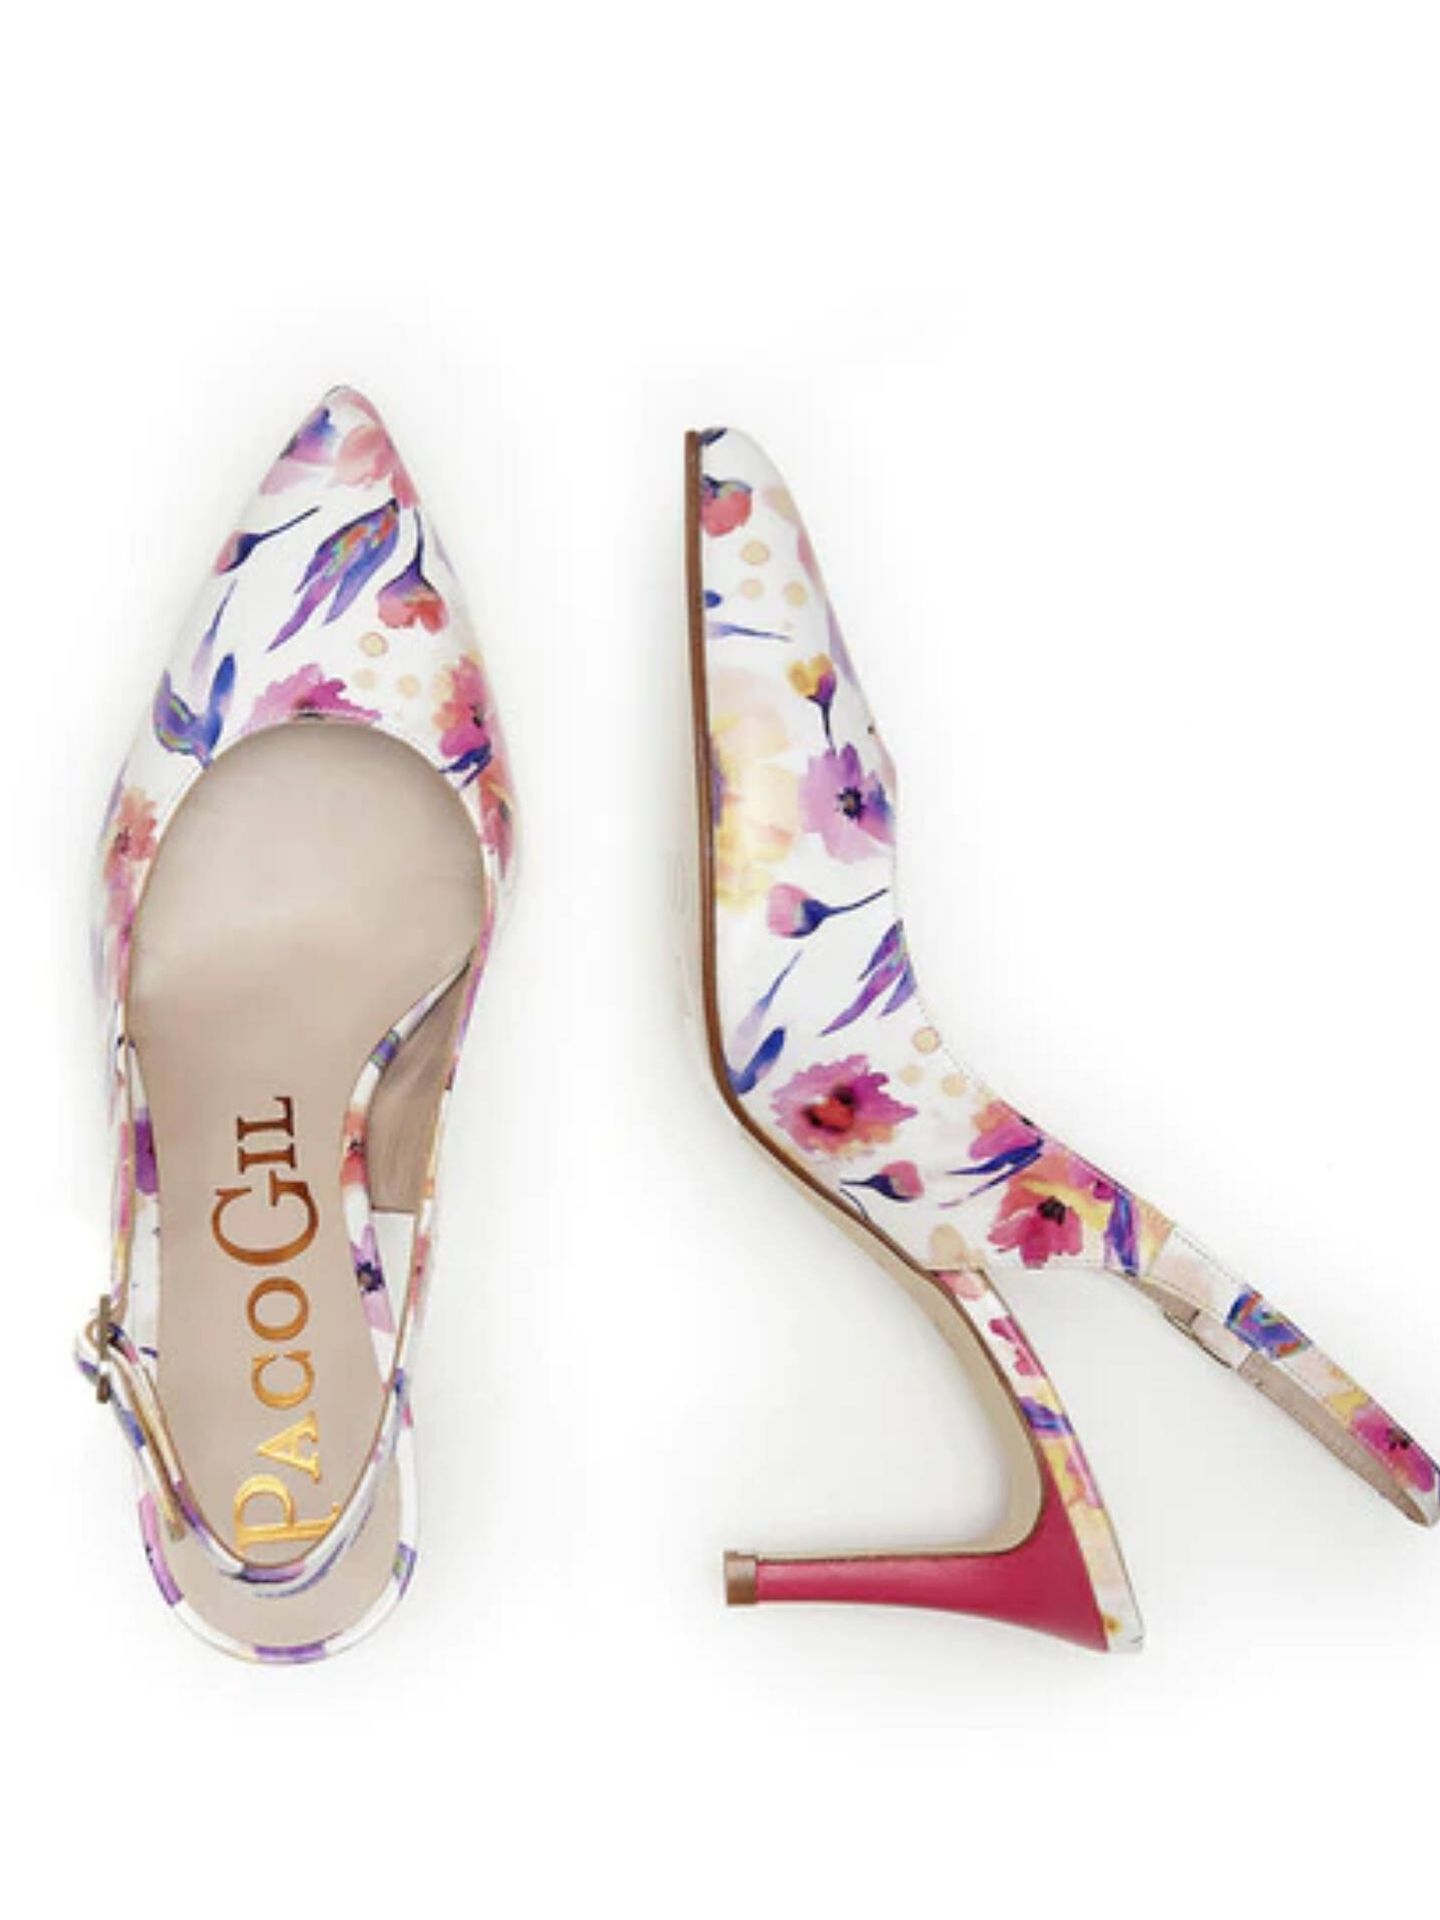 Zapatos de tacón con flores de Paco Gil, a la venta en El Corte Inglés. (Cortesía)